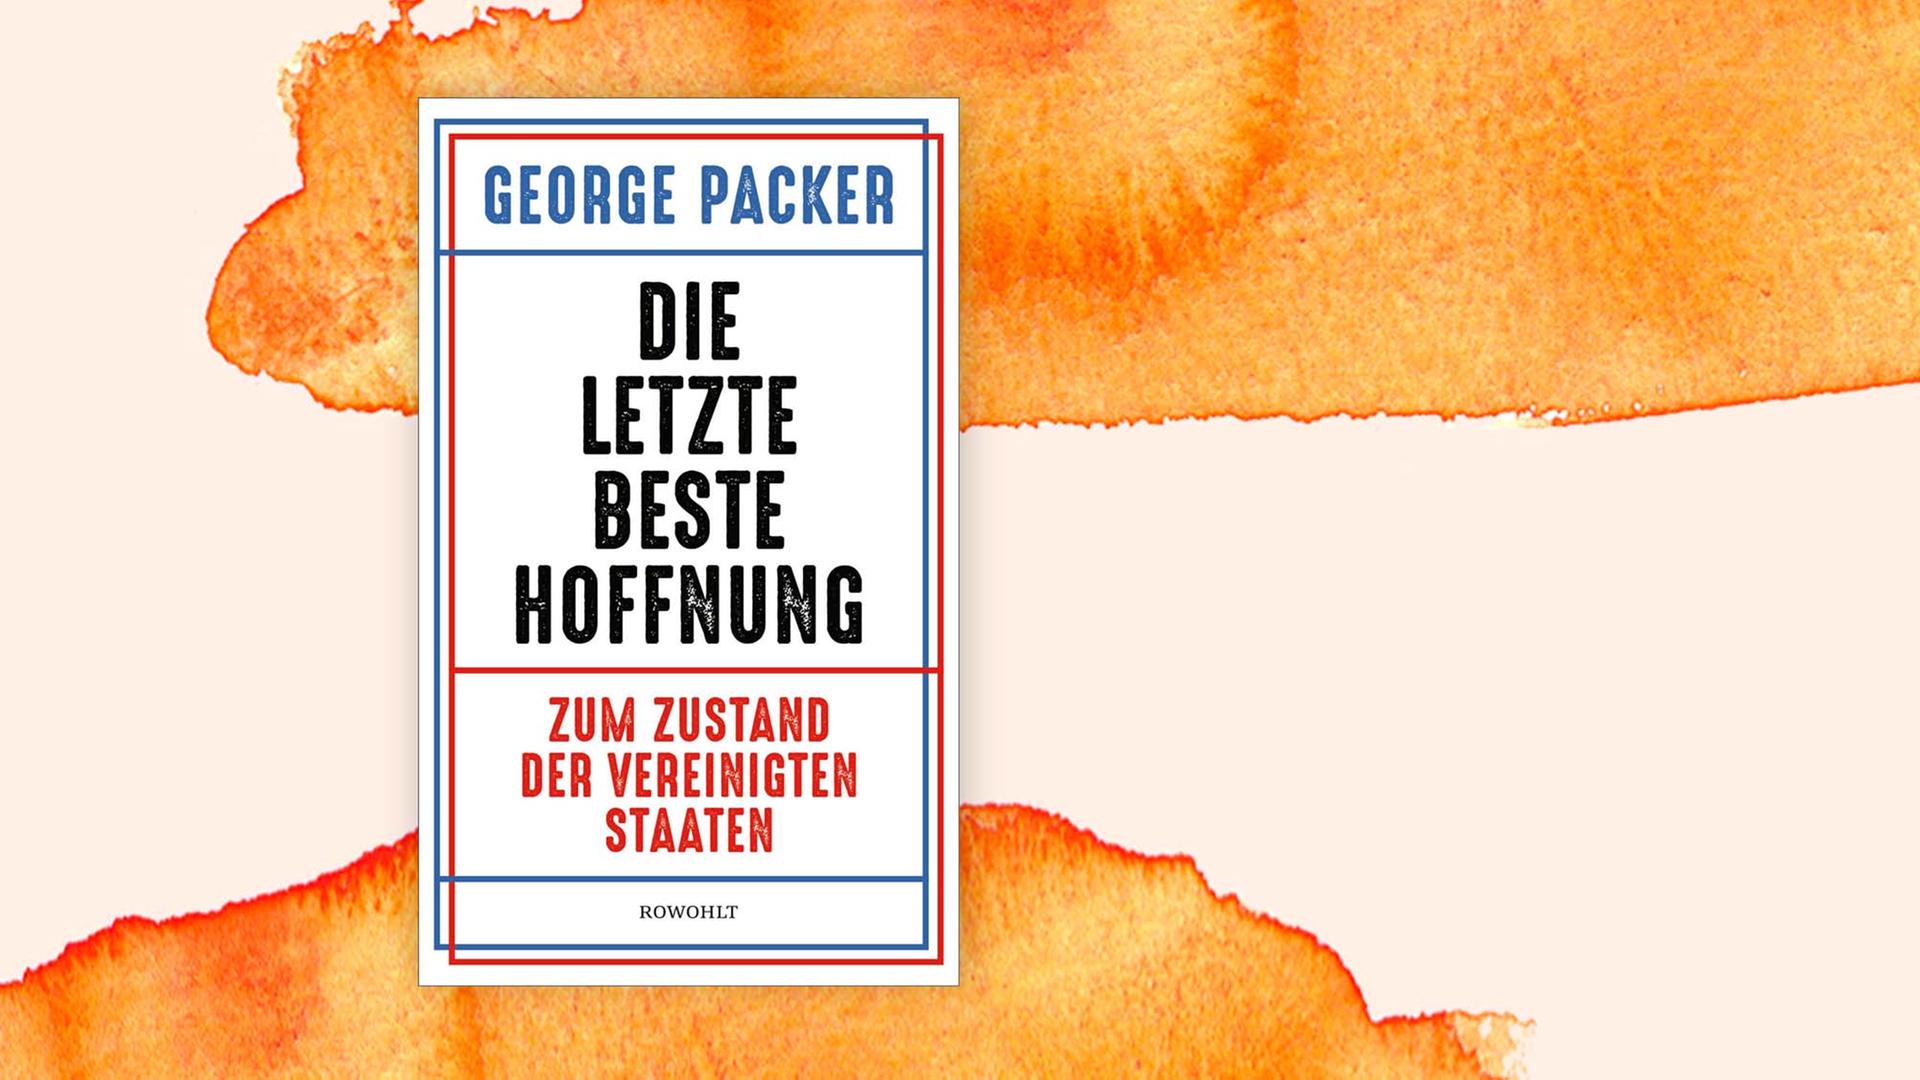 Das Cover des Buches "Die letzte beste Hoffnung" von George Packer auf pastelligem Hintergrund.